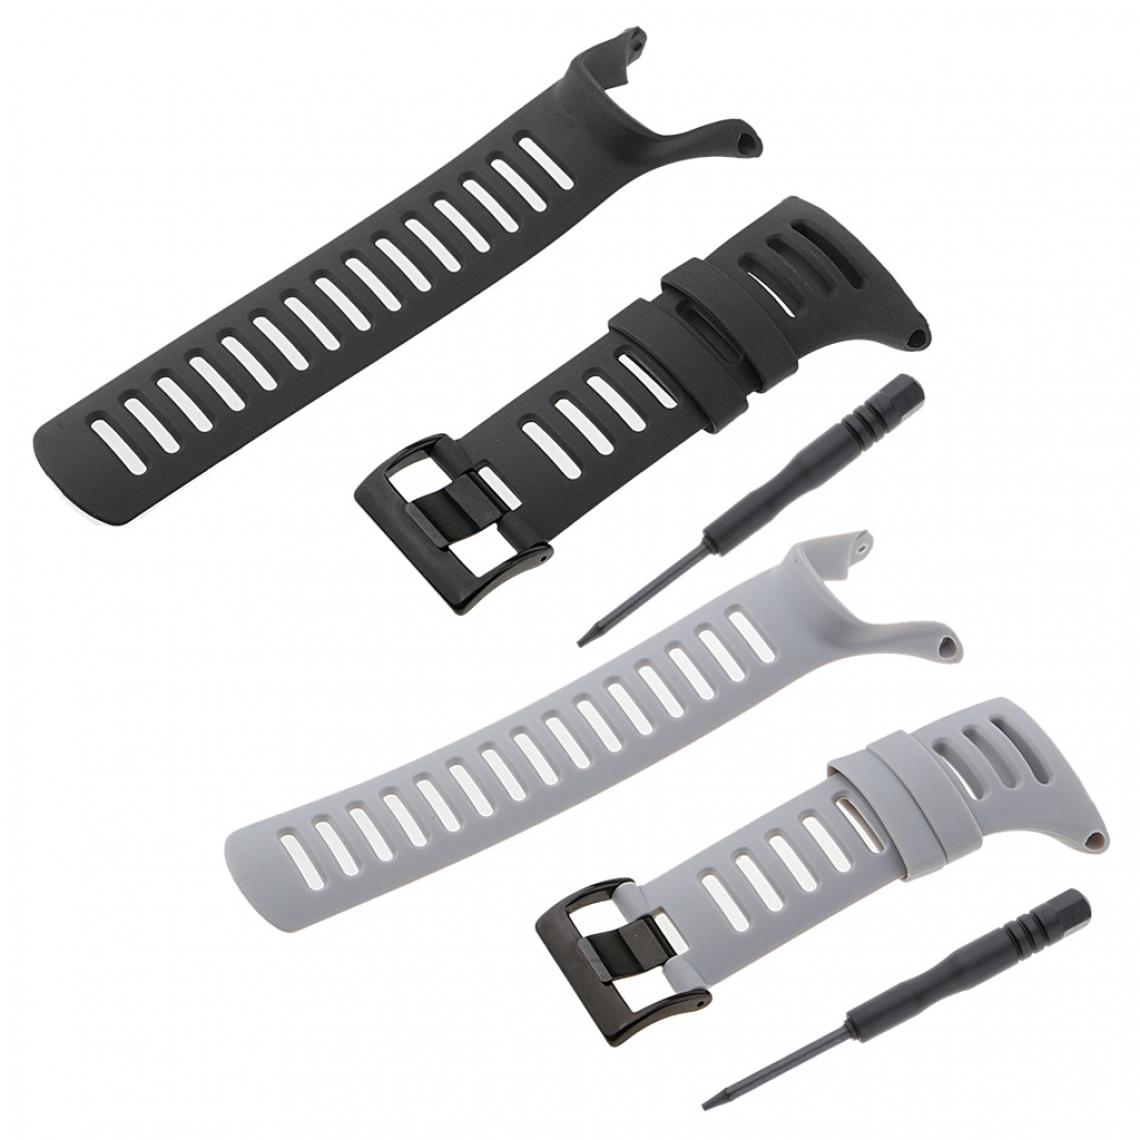 marque generique - 2pcs Bracelet de Montre en Caoutchouc Imperméable pour SUUNTO Ambit 3 Ambit 2 Ambit 1 - Accessoires montres connectées